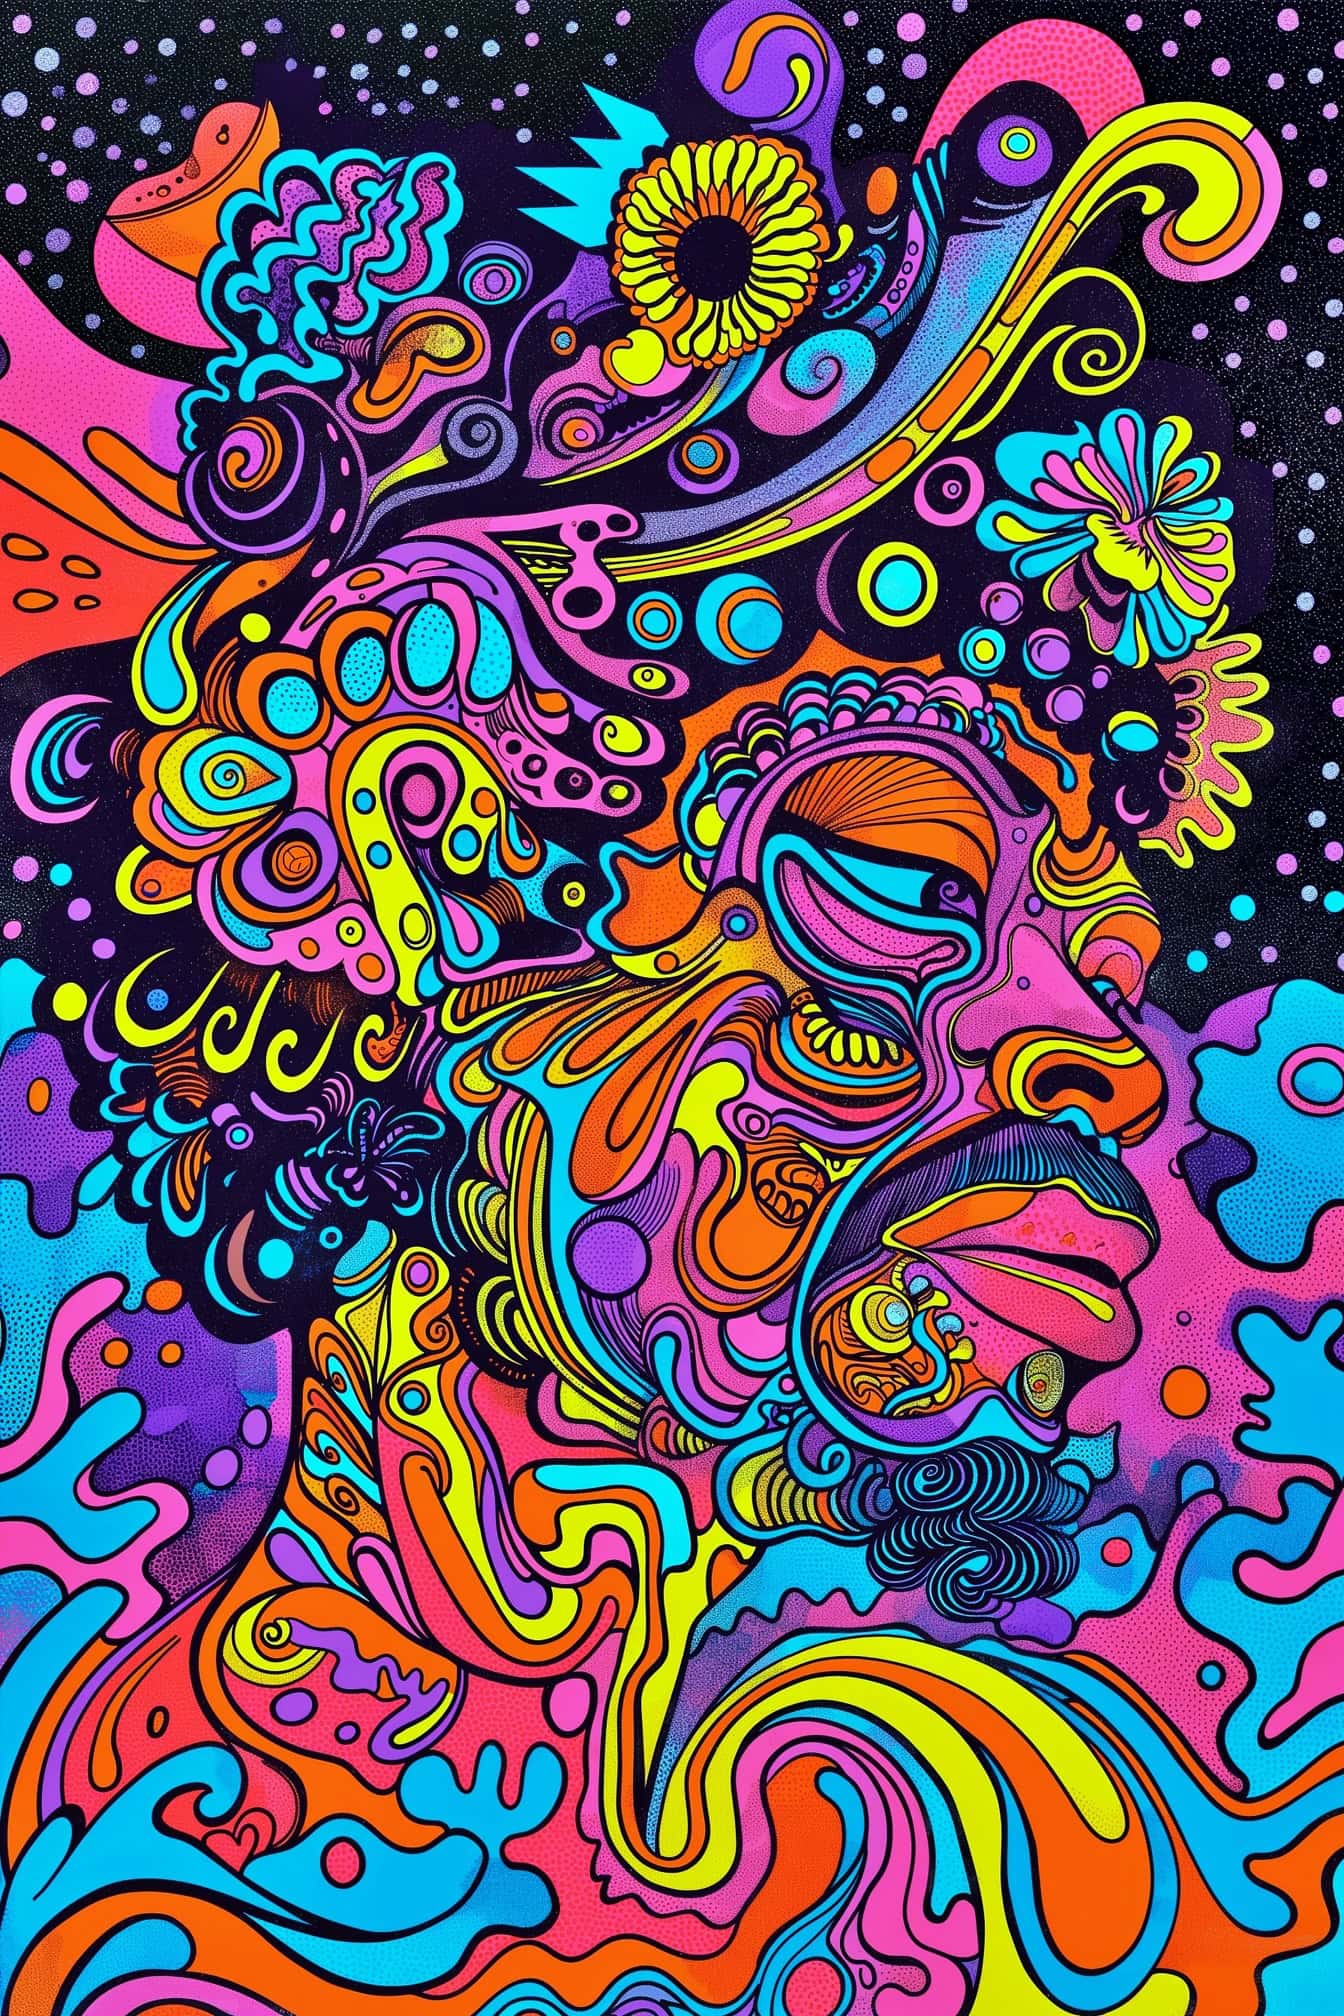 Färgrikt abstrakt psykedeliskt konstverk av en man i popkonststil